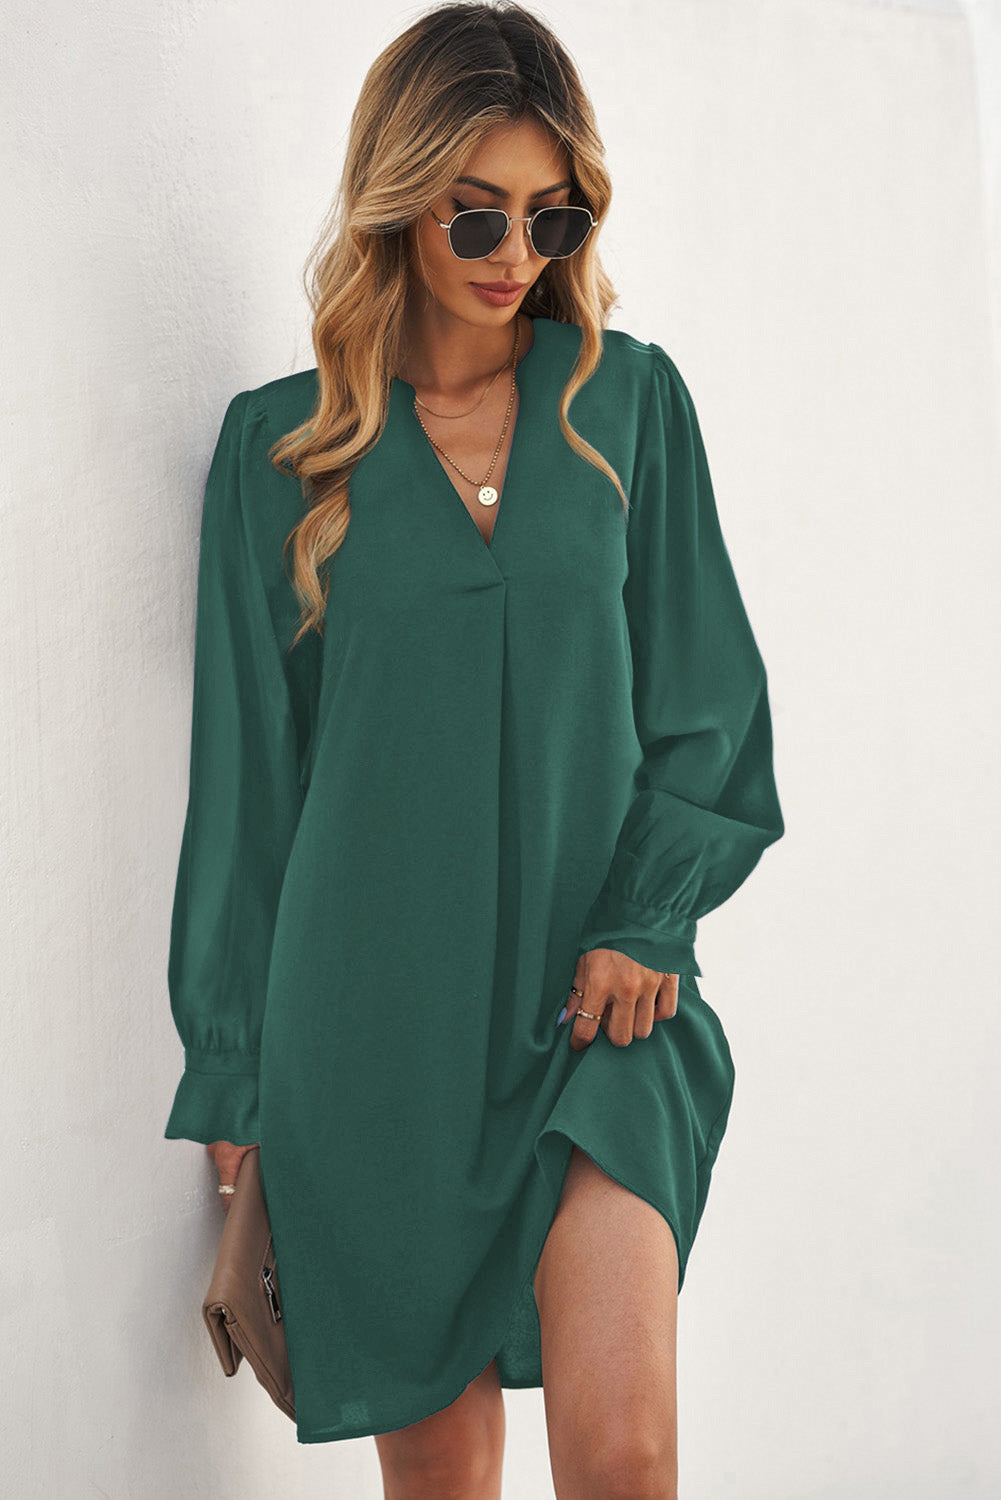 Green Split V Neck Ruffled Sleeves Shirt Dress